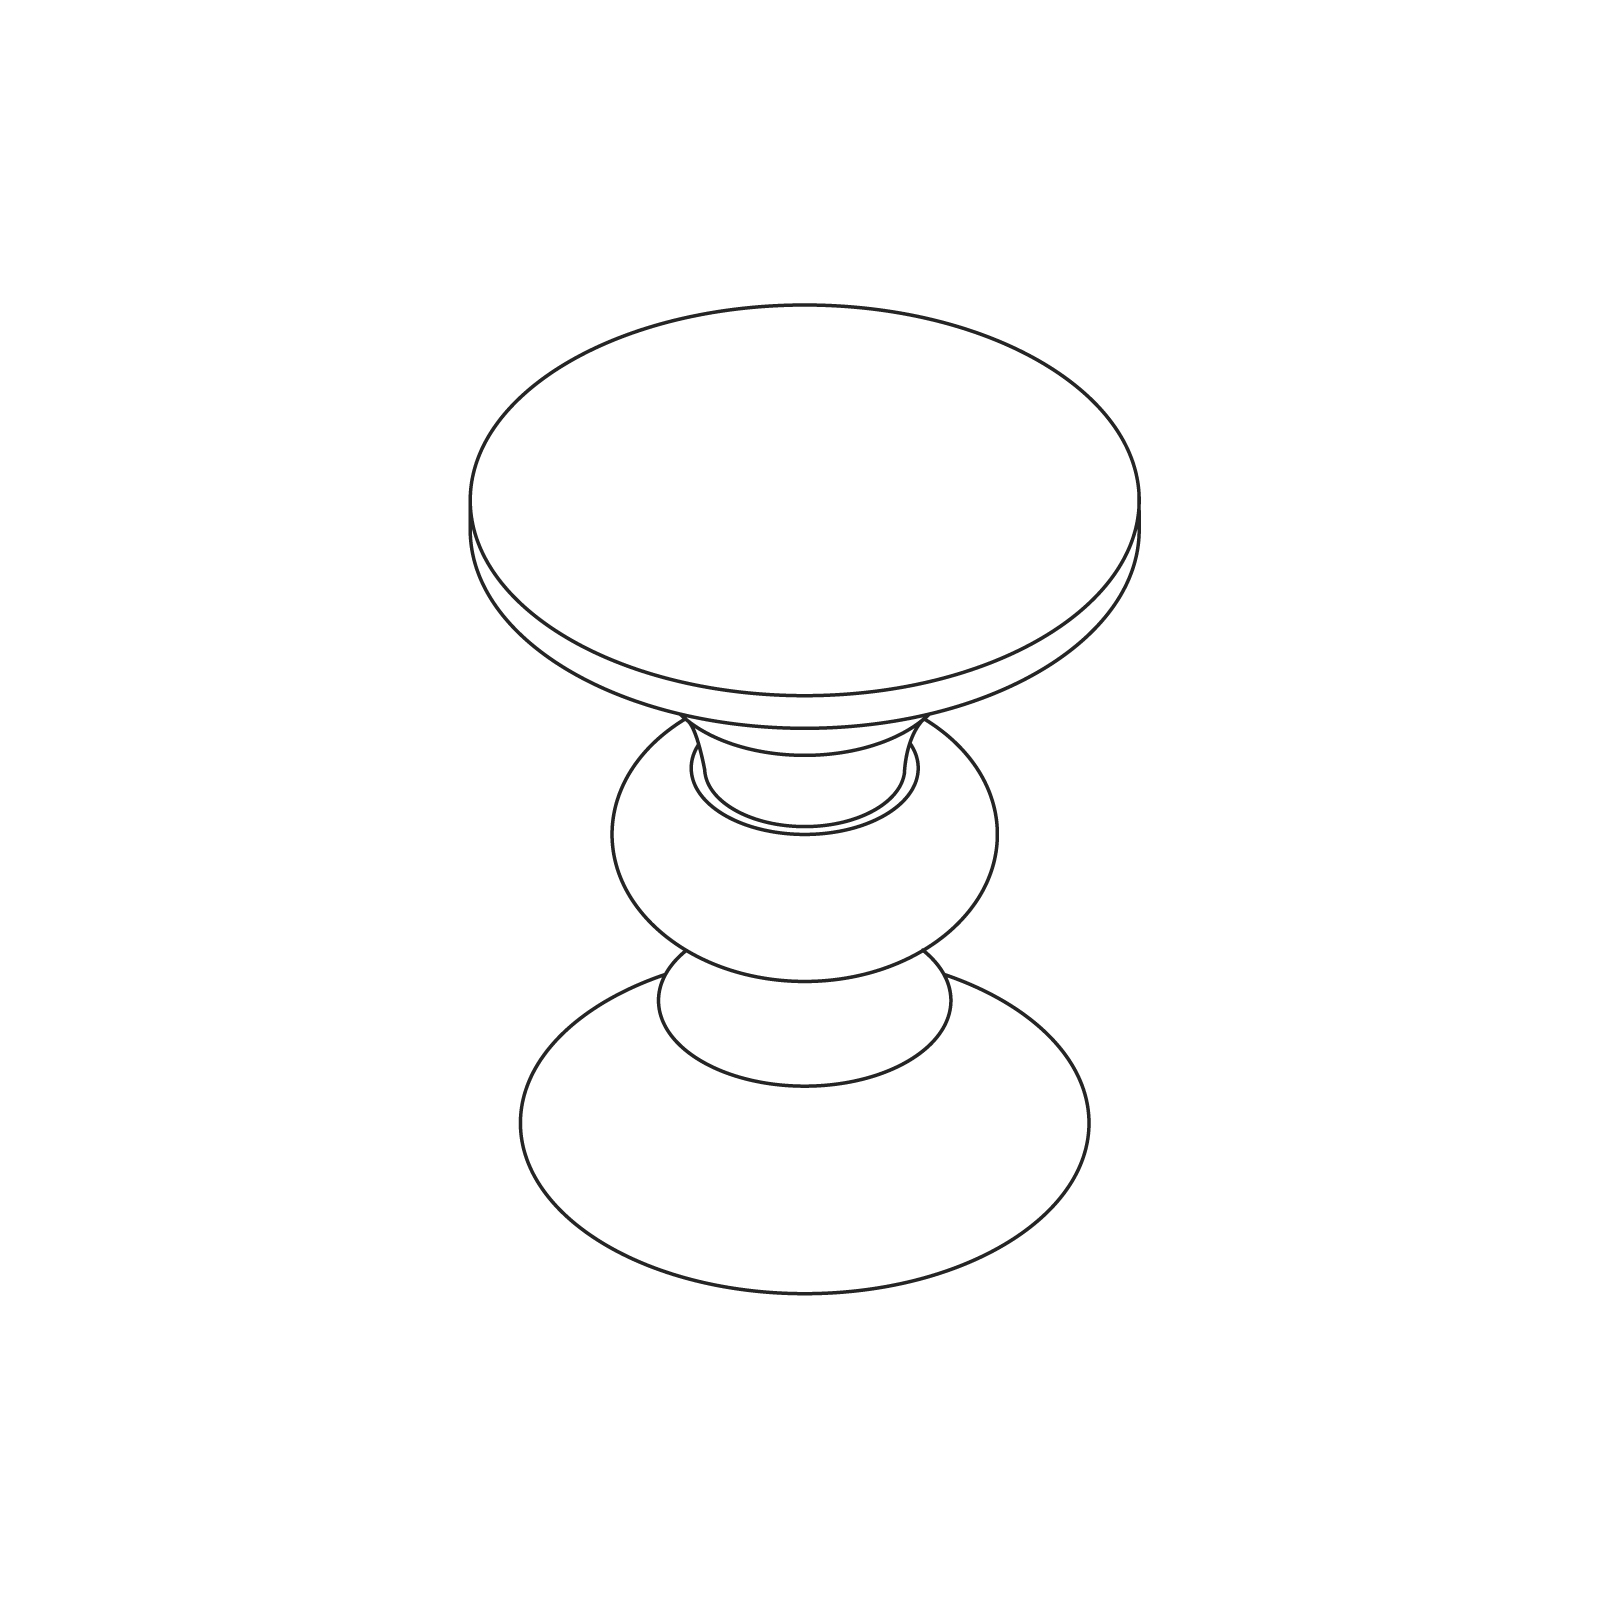 线描图 - Eames 转动式凳子–B 形